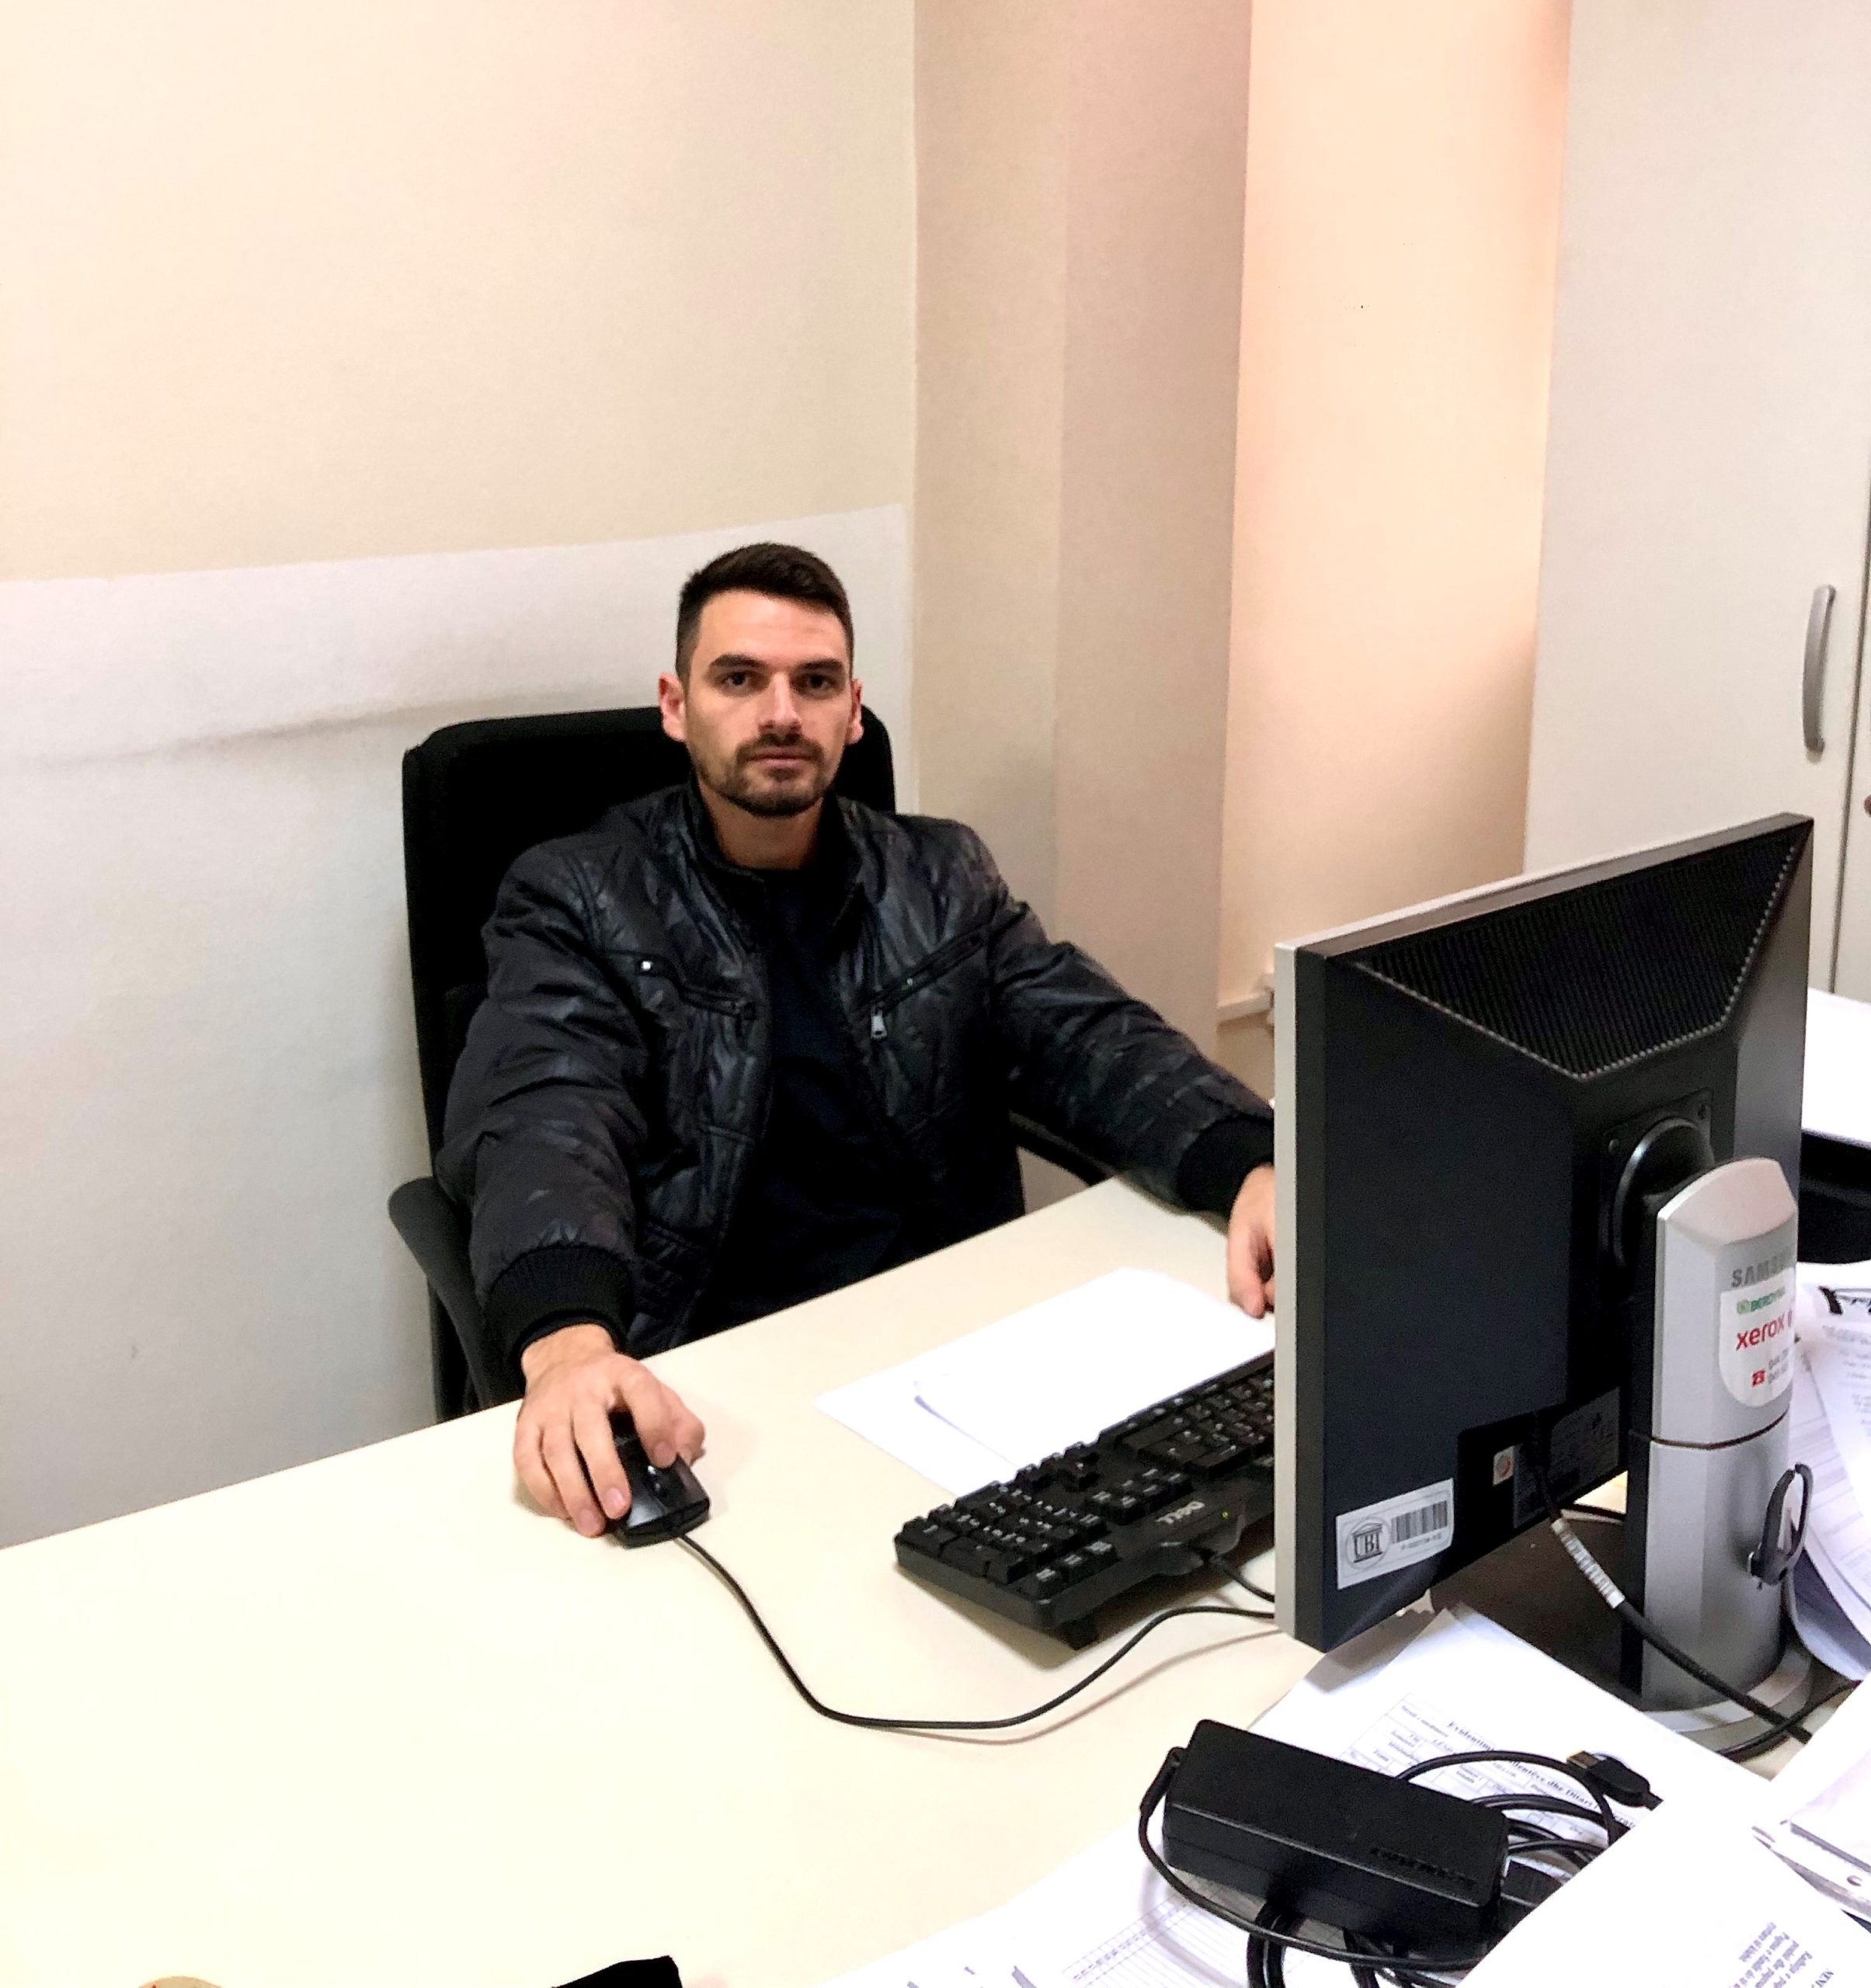 A former student of UBT, Arbër Mazrekaj is employed at UBT